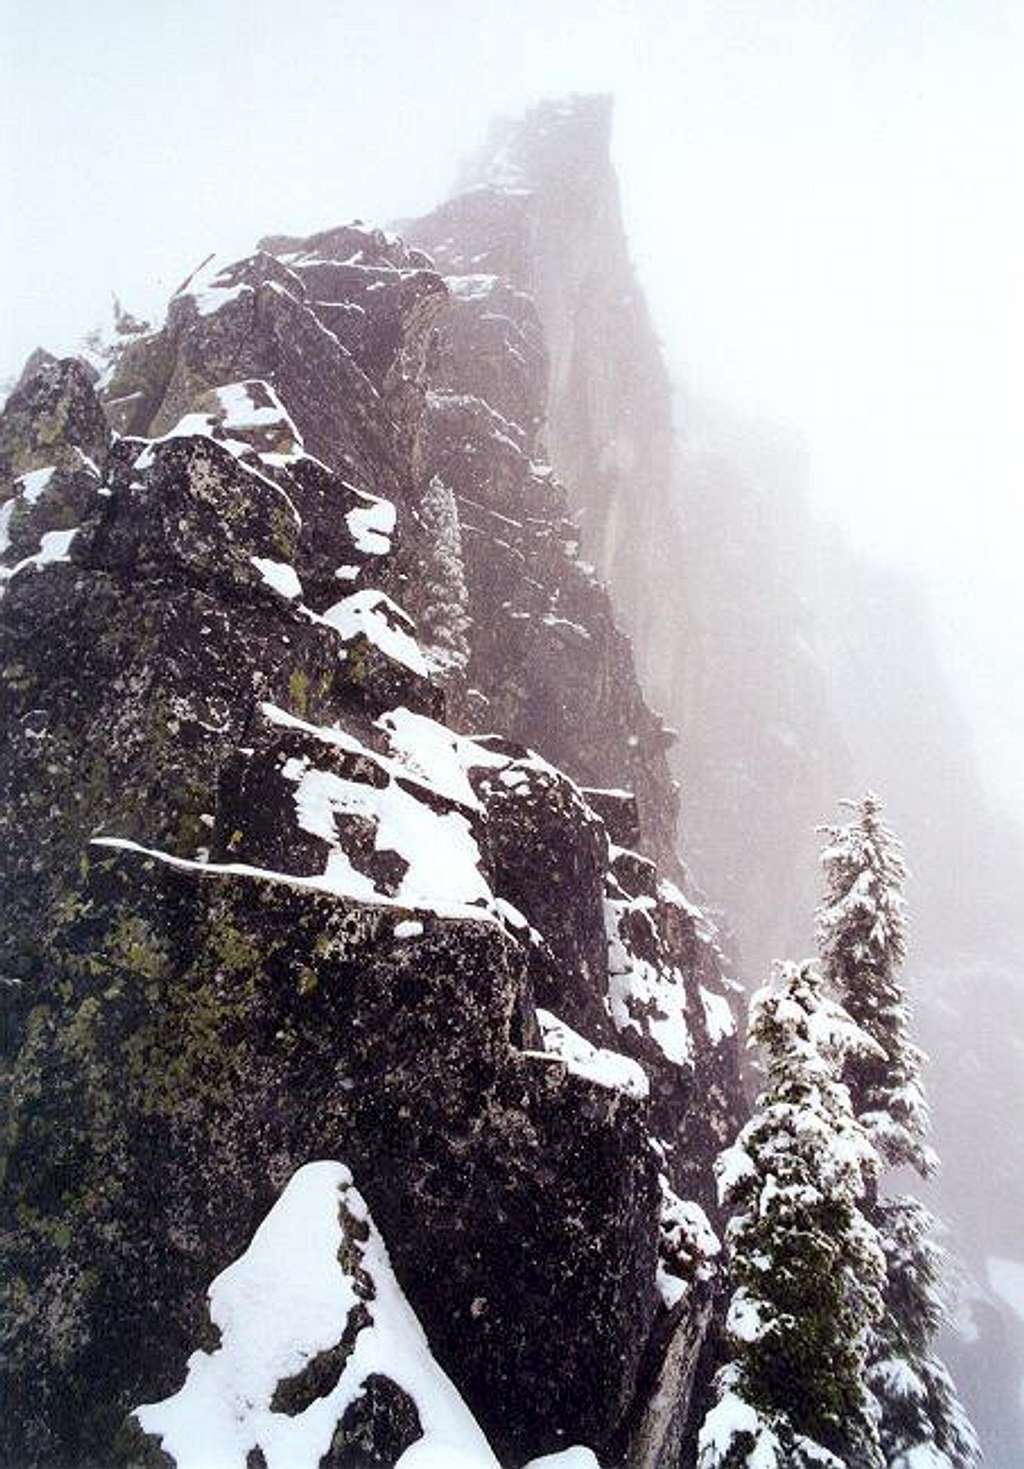 The lower West Ridge in snowy...